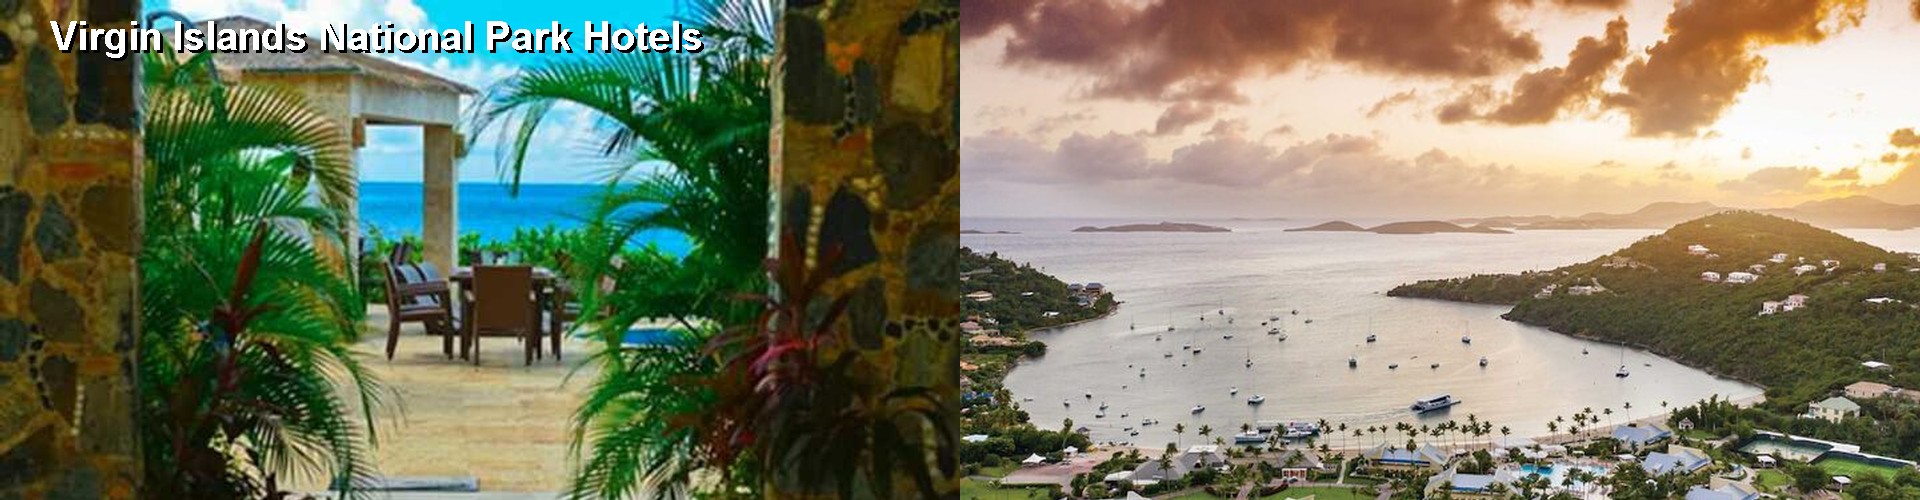 5 Best Hotels near Virgin Islands National Park